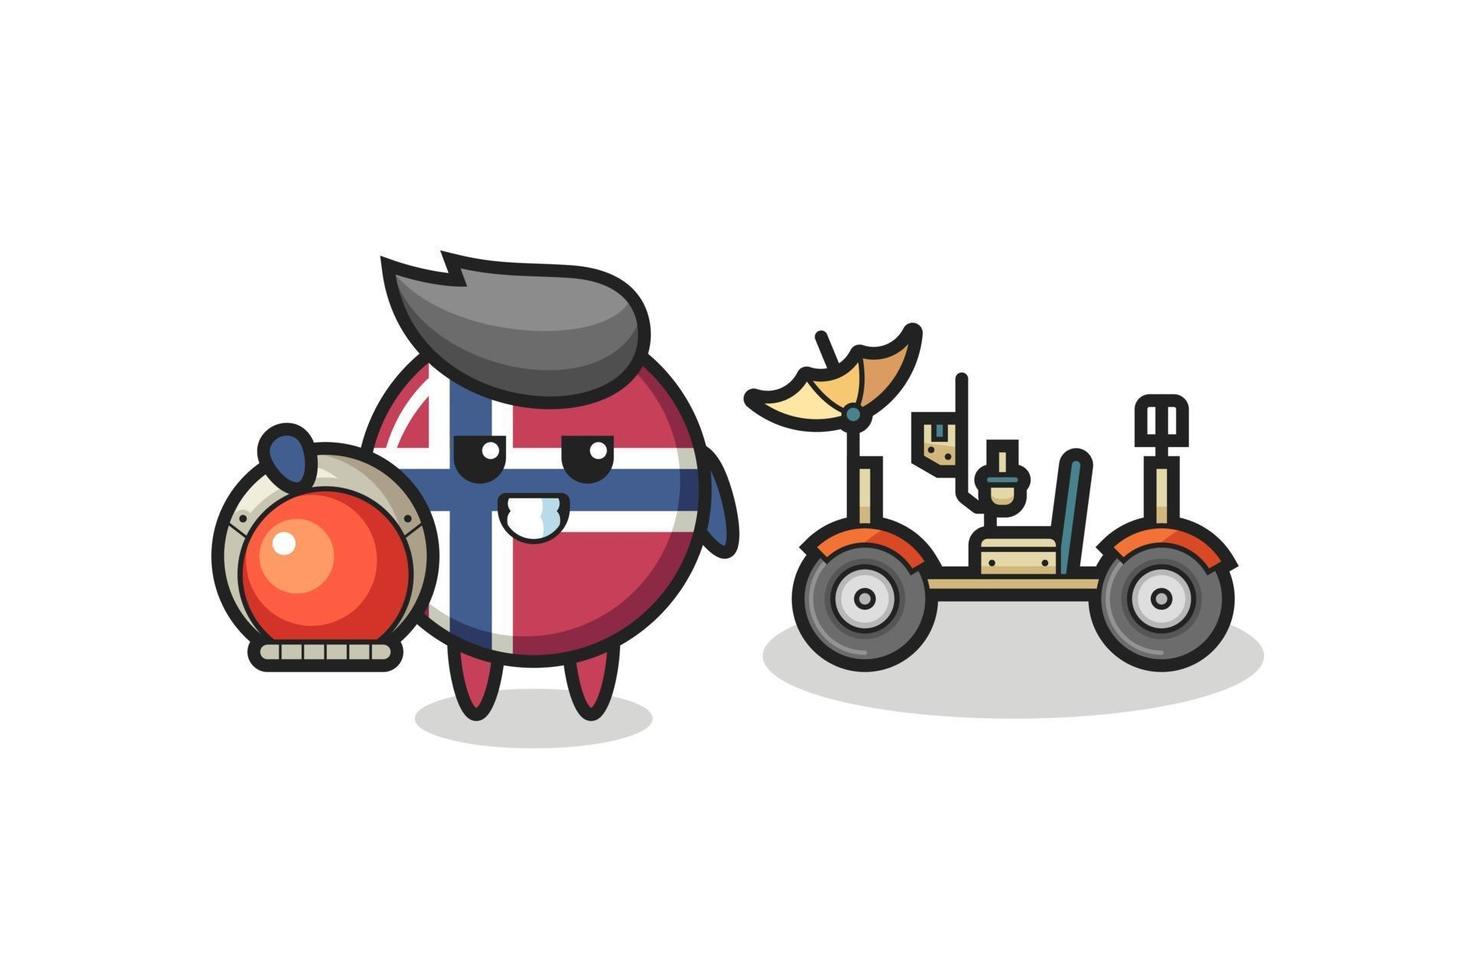 le joli badge du drapeau norvégien en tant qu'astronaute avec un rover lunaire vecteur